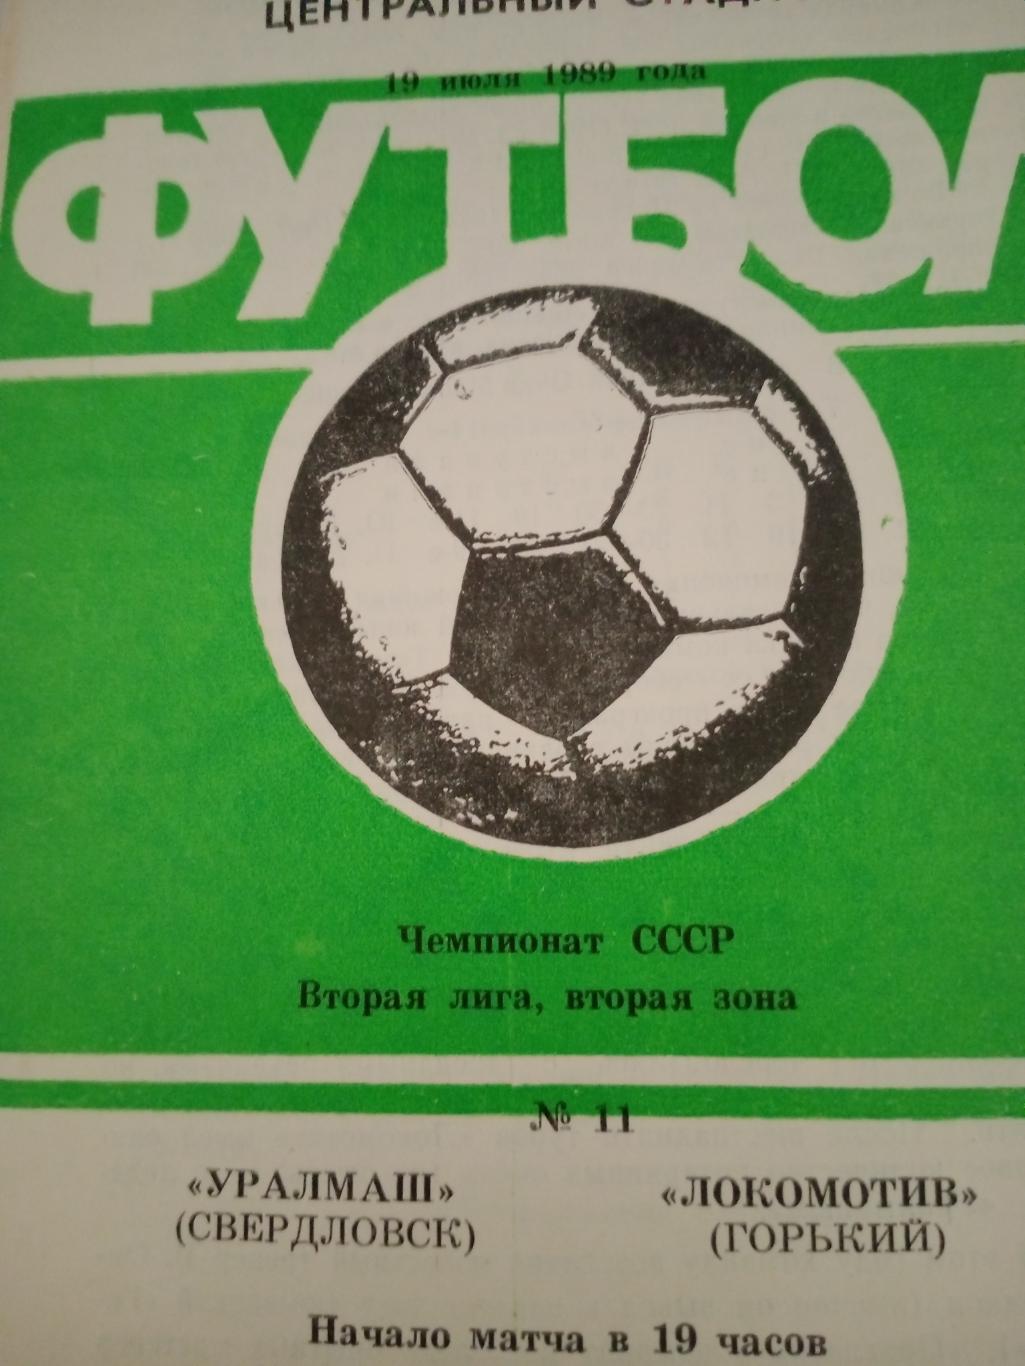 Уралмаш Свердловск - Локомотив Горький. 19 июля 1989 год